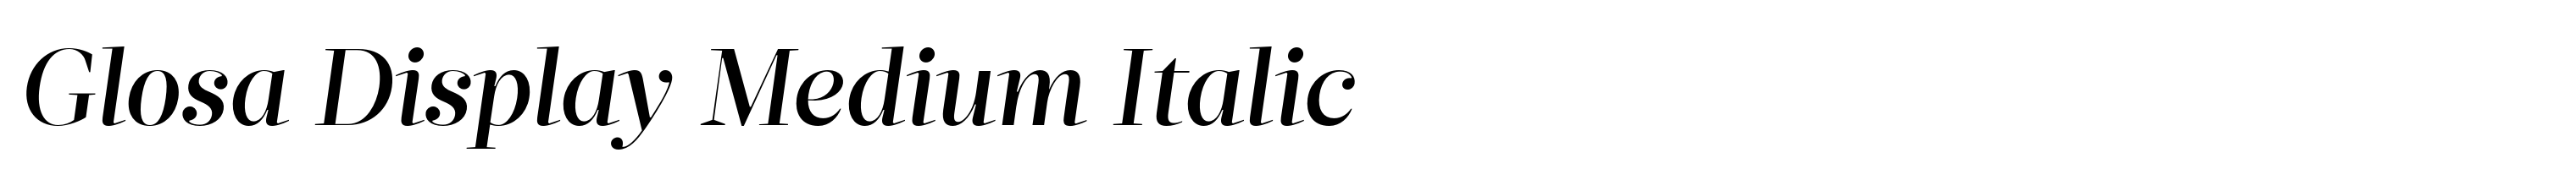 Glosa Display Medium Italic